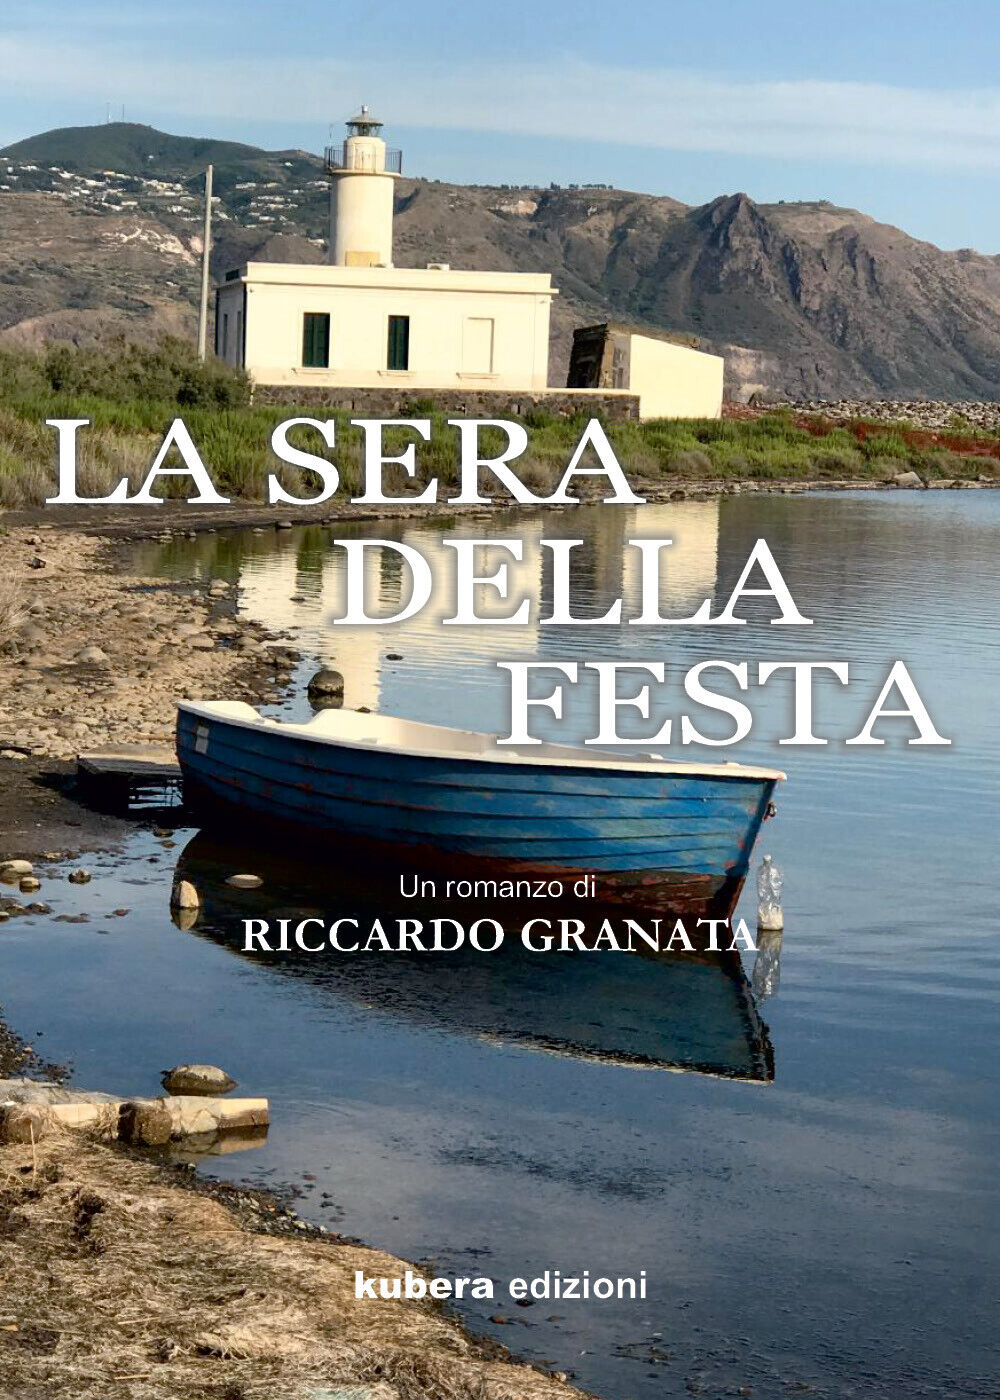 La sera della festa di Riccardo Granata,  2021,  Kubera Edizioni